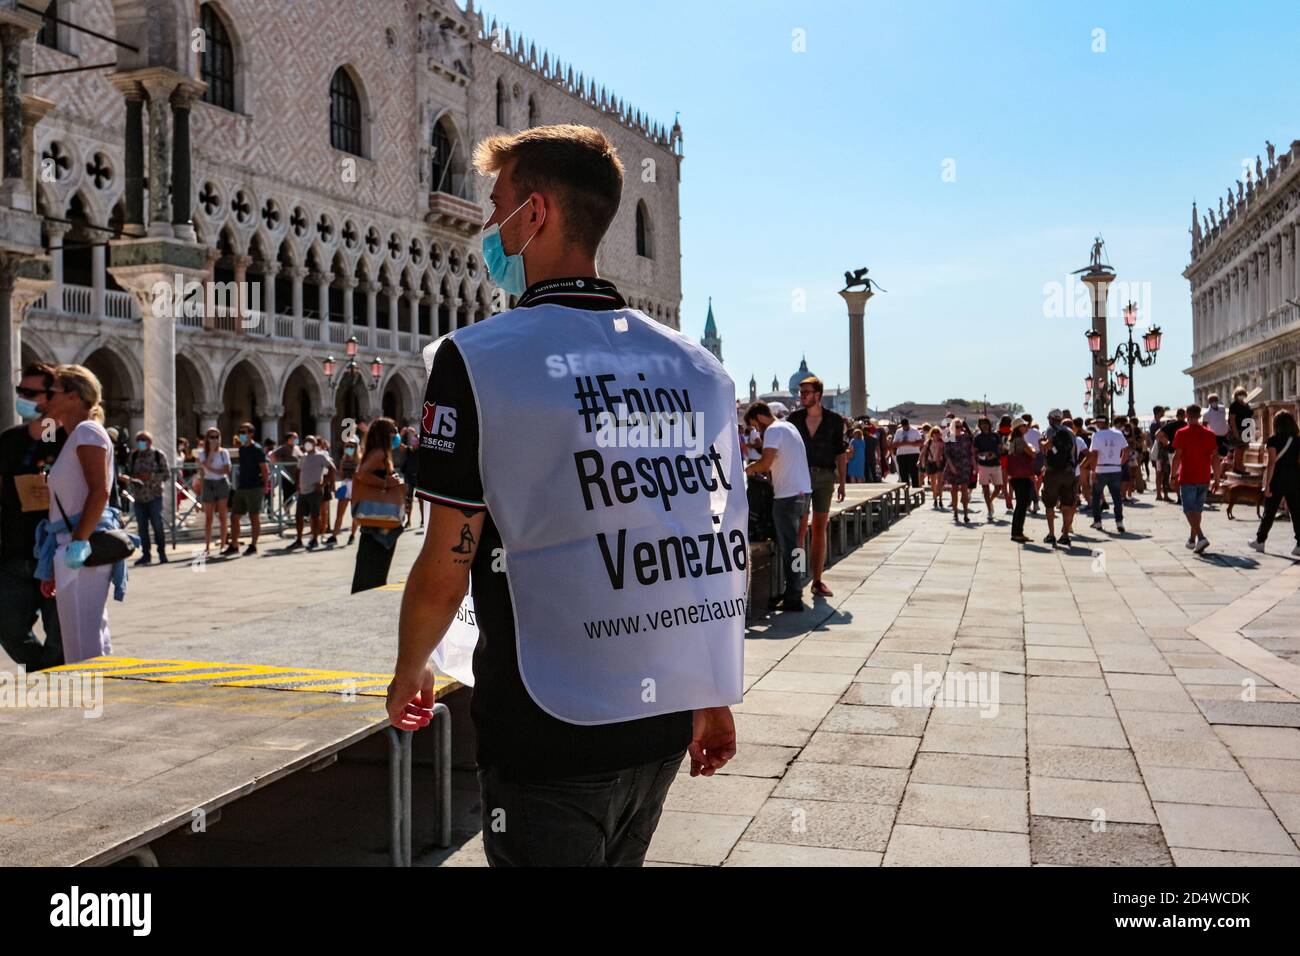 '#Ajouissez-vous respect Venezia' garde en masque chirurgical représente le tourisme responsable sur la place Saint Marc pendant la crise du coronavirus. Banque D'Images